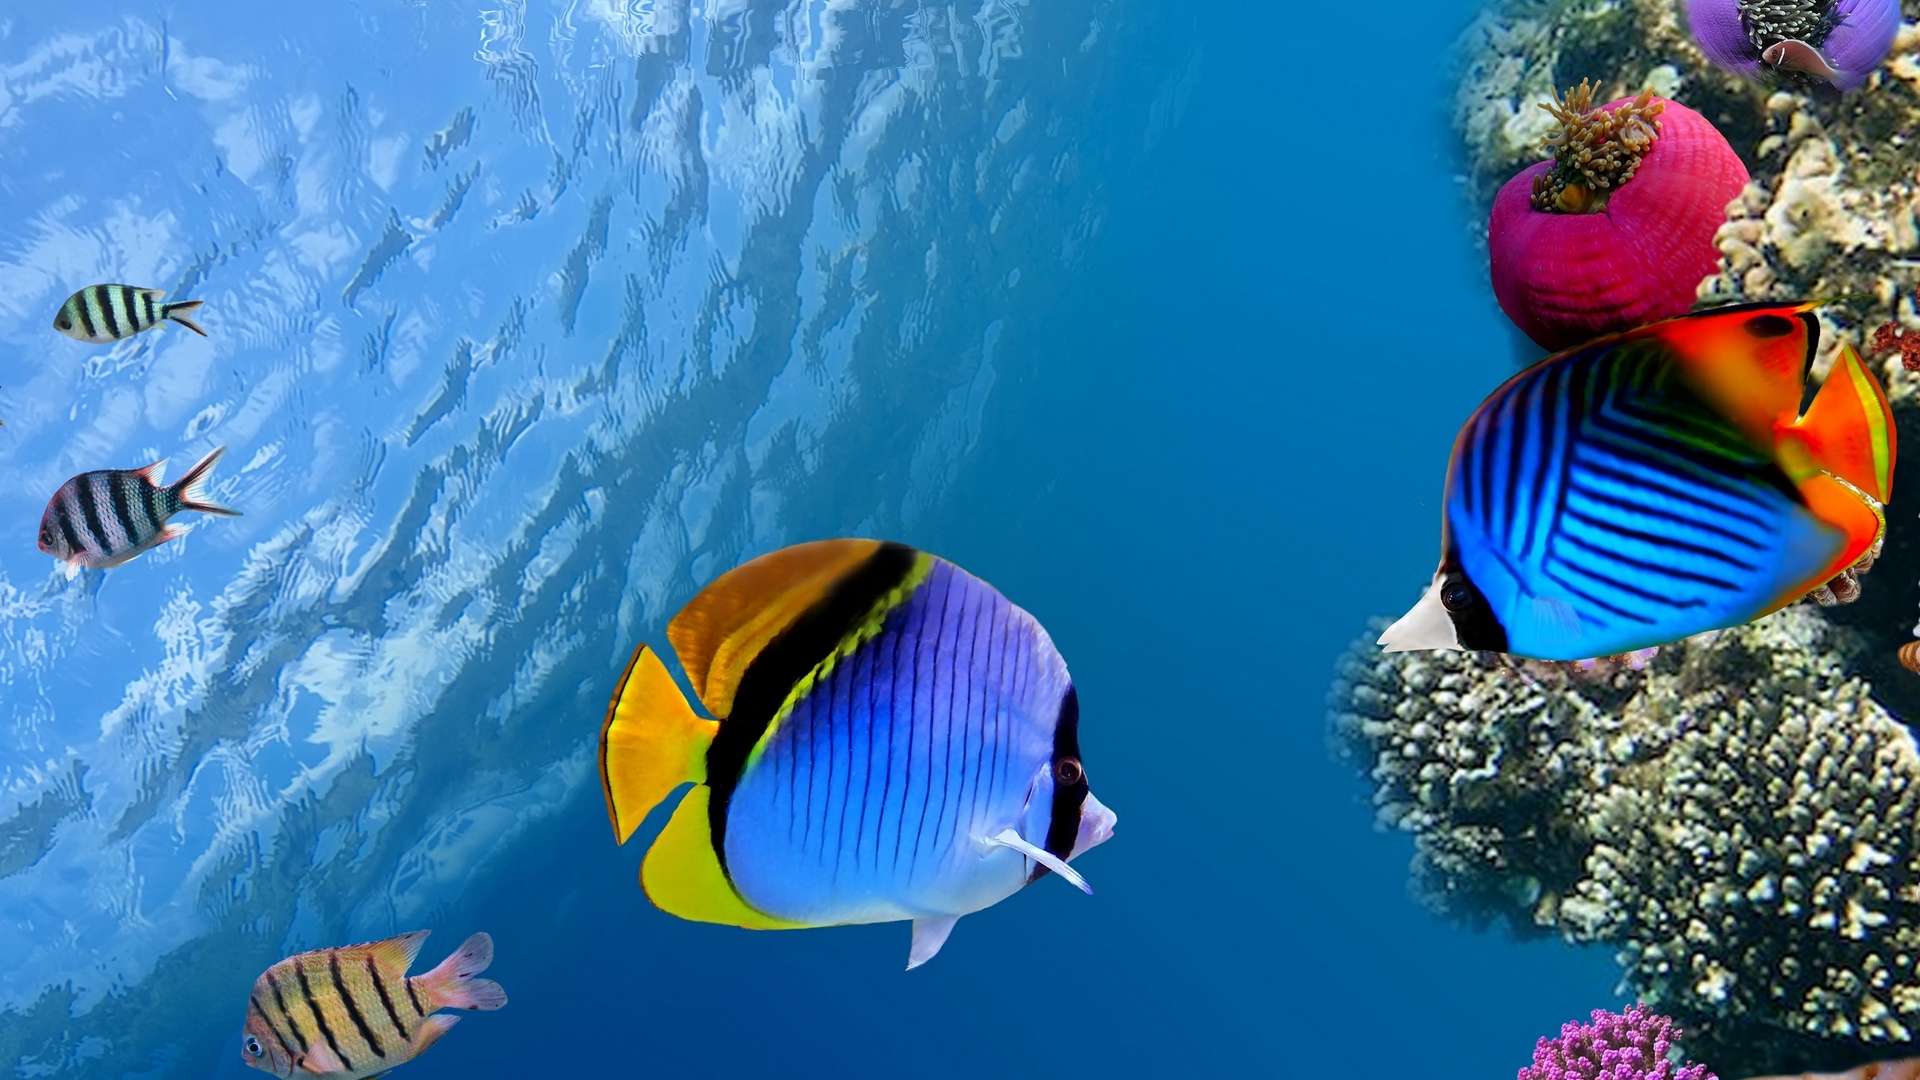 download wallpaper: een koraalrif met vissen wallpaper